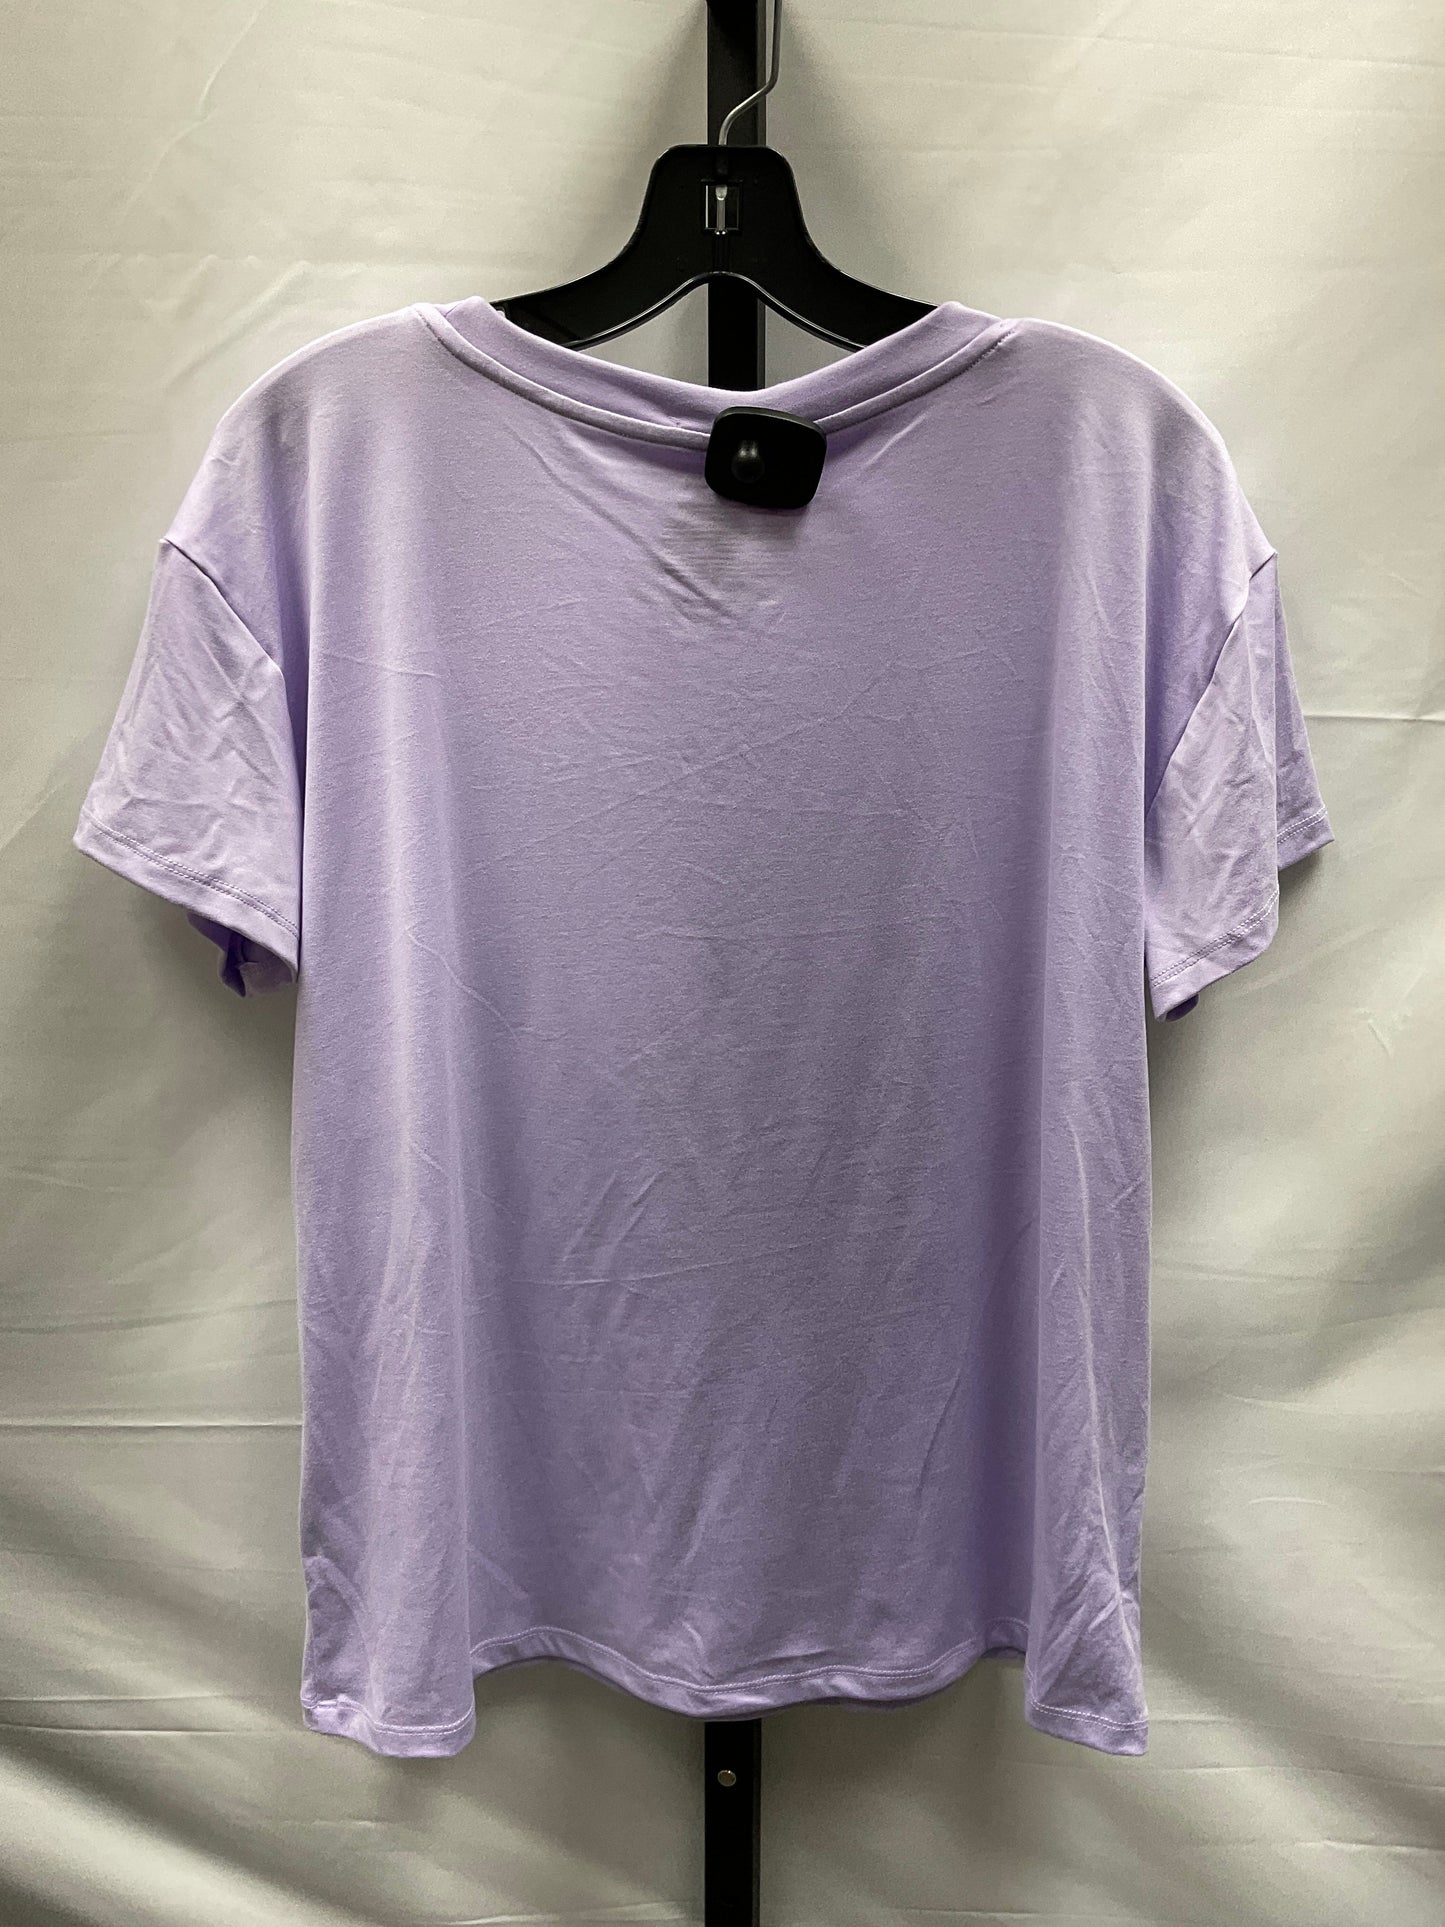 Purple Pajamas 2pc Joyspun, Size M